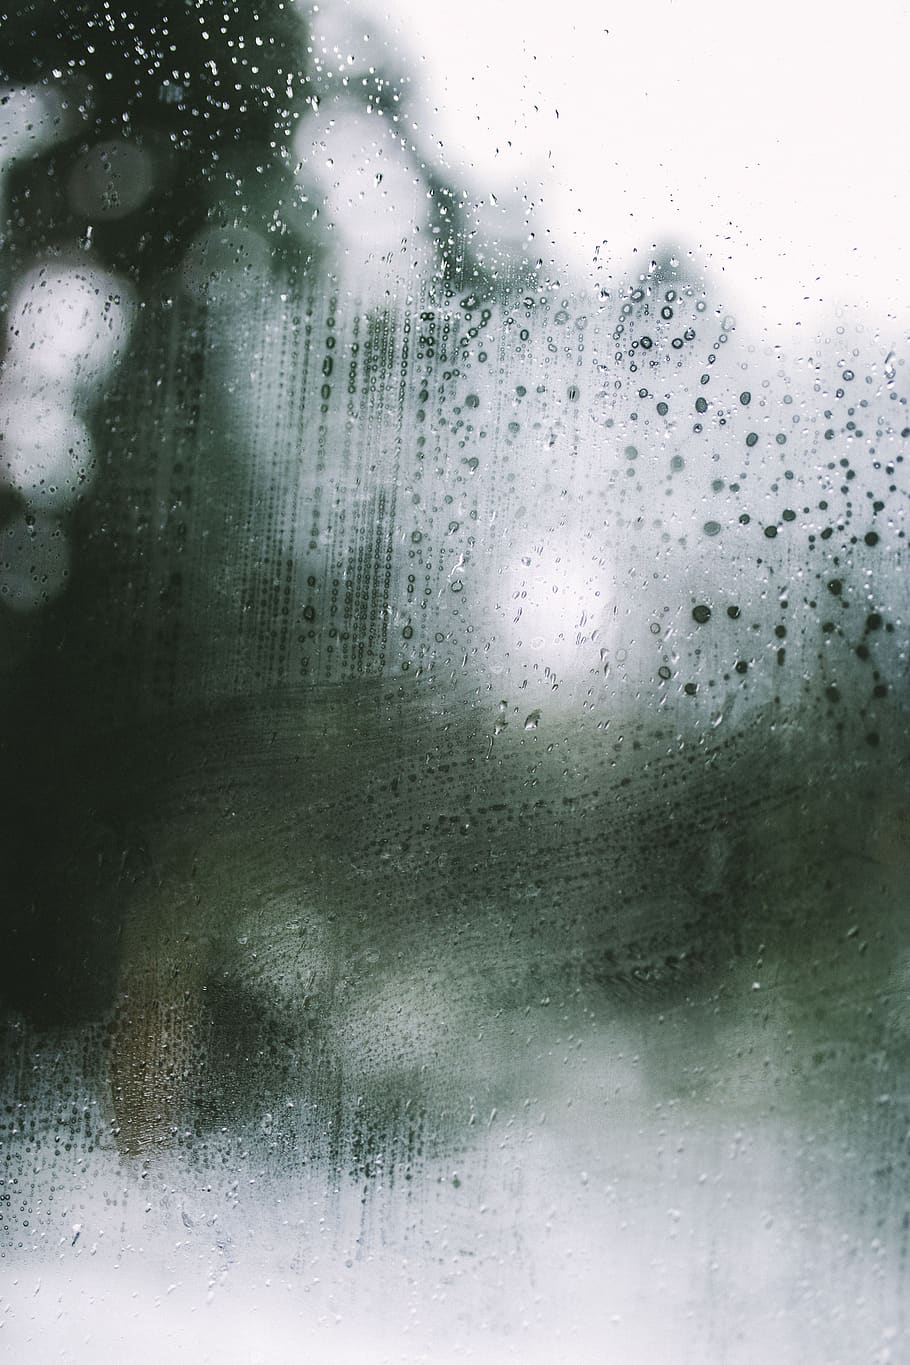 lluvia, mojado, agua, gotas, desenfoque, bokeh, vidrio - material, soltar, ventana, transparente